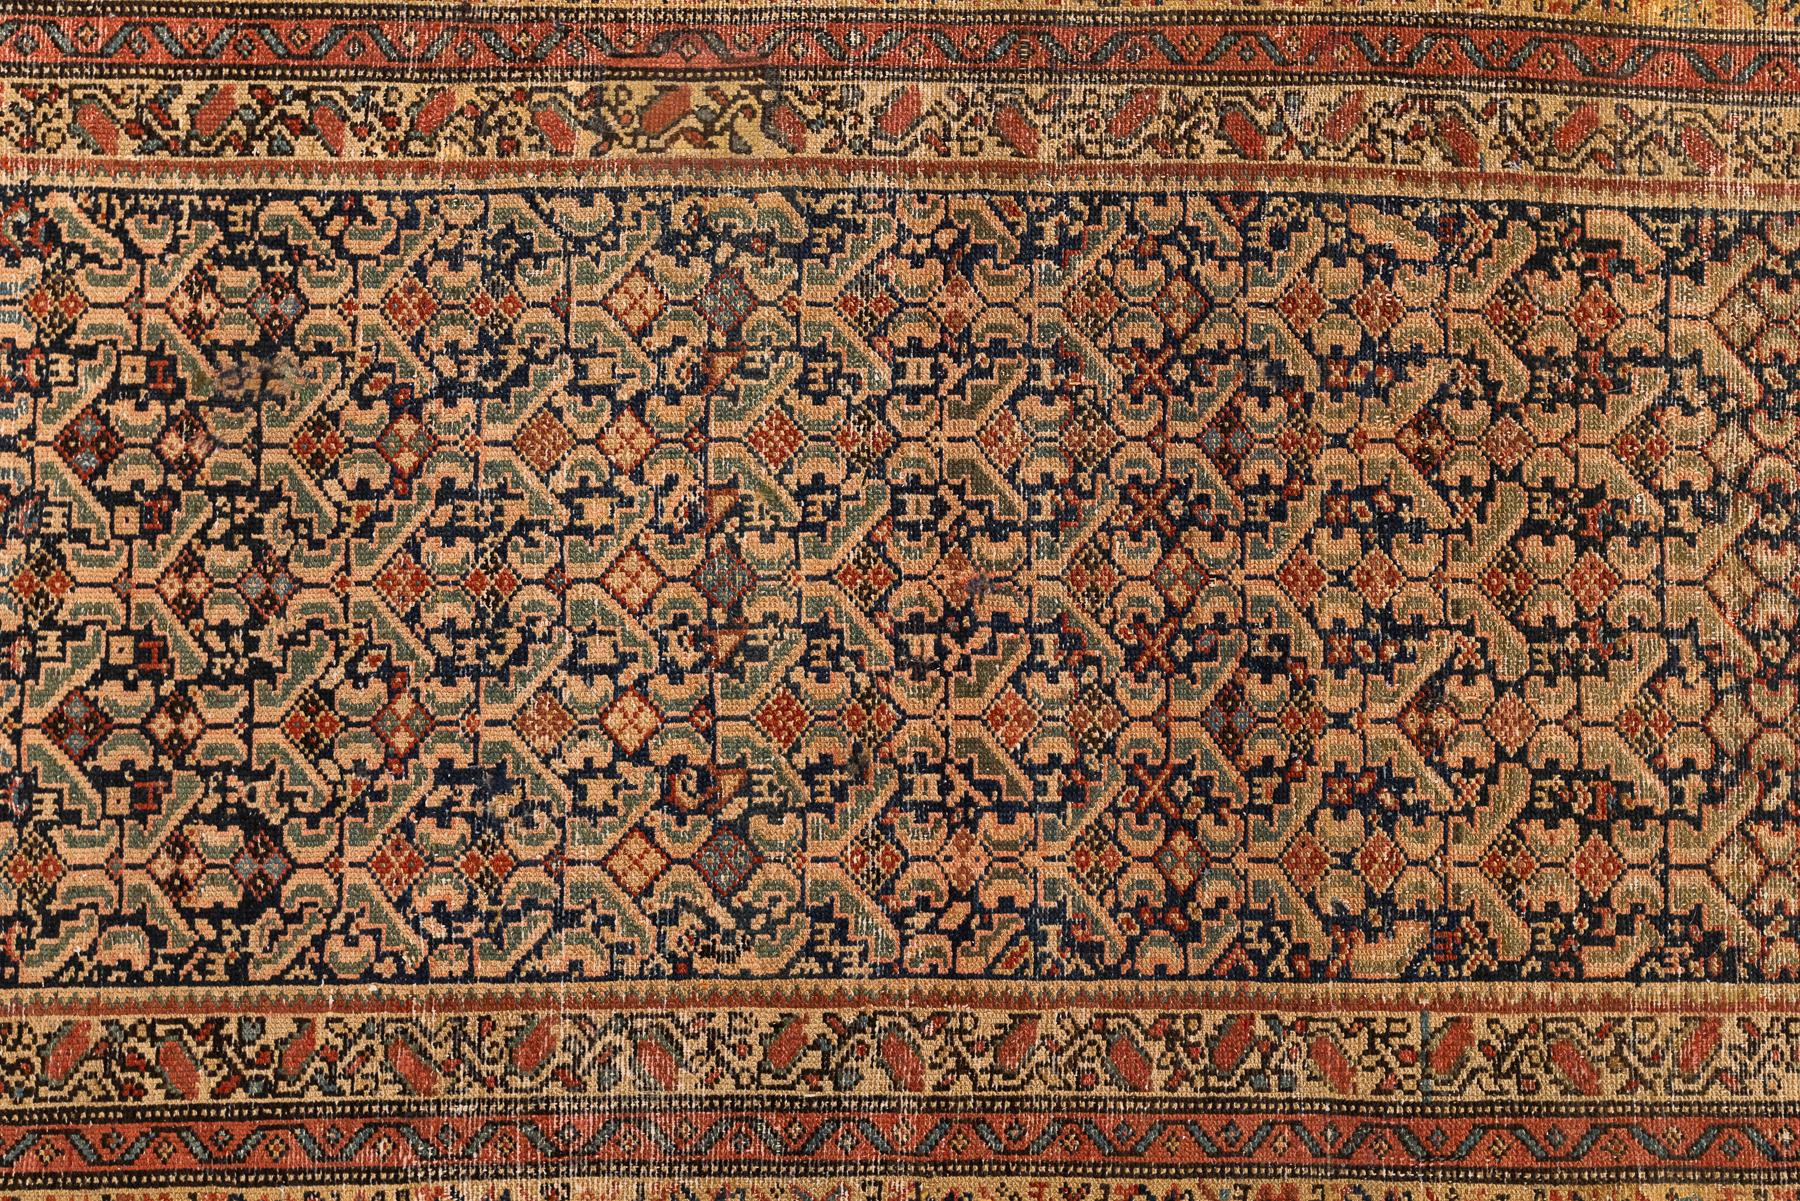 Malayer - Nordwestpersien

Antiker persischer Malayer-Teppich mit einem stilisierten Muster, das sich über das gesamte Hauptfeld des Teppichs erstreckt, in Marineblau mit einer pastellfarbenen Farbbalance in Beige-, Grün- und Rottönen. Stilisierte